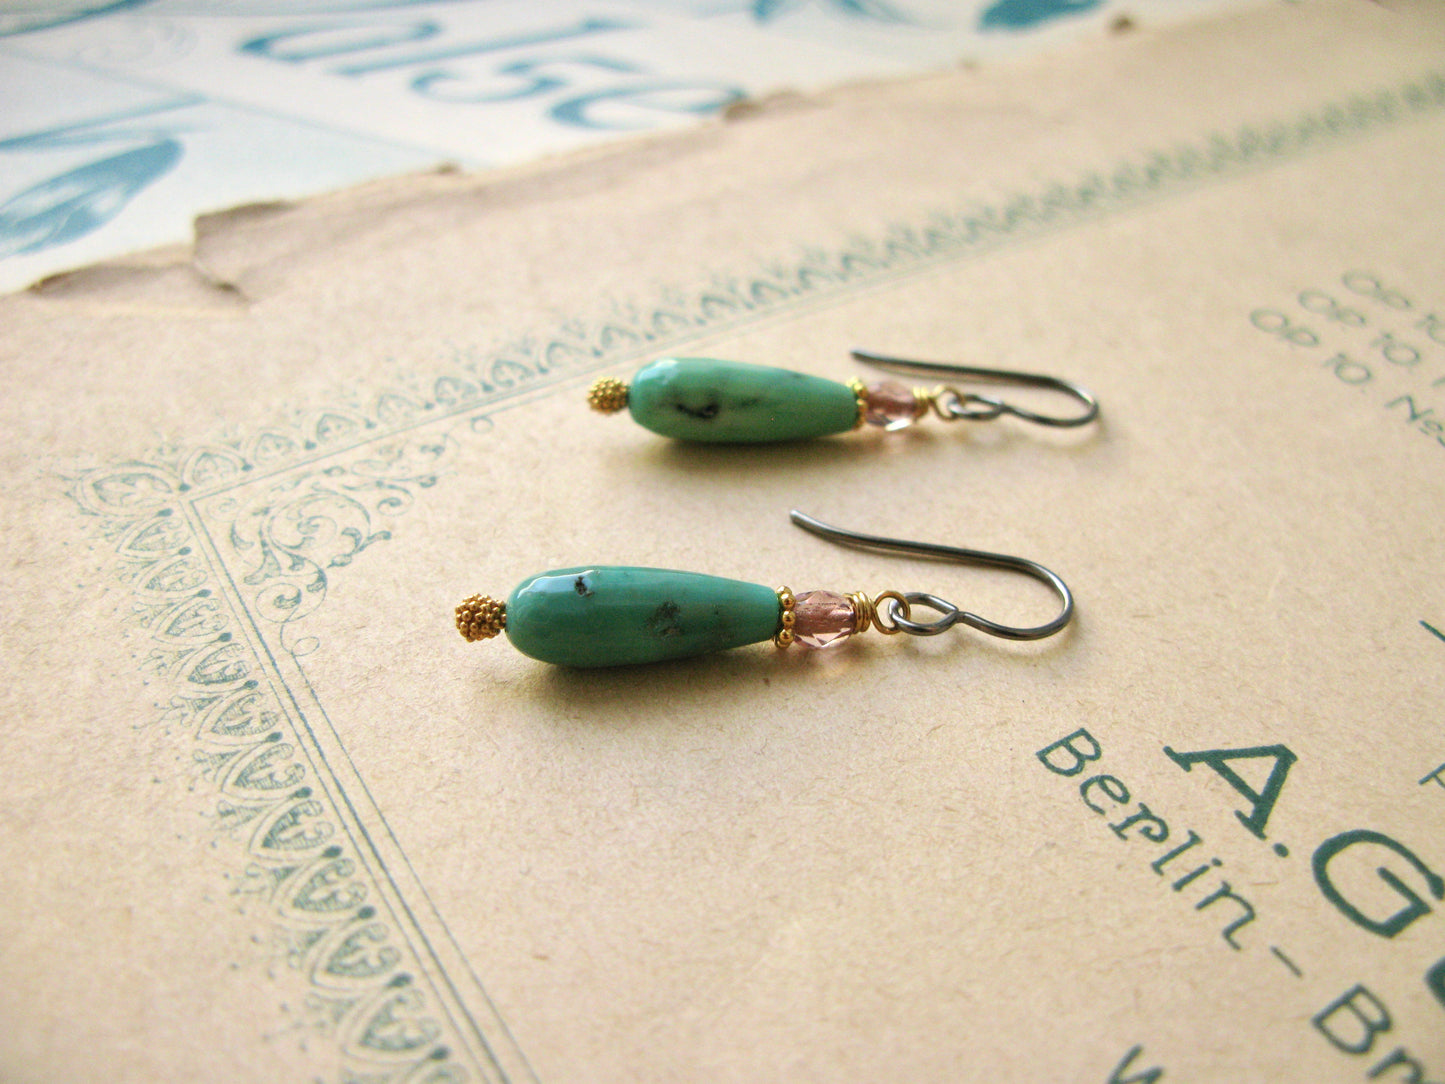 Magnolia hook earrings in green